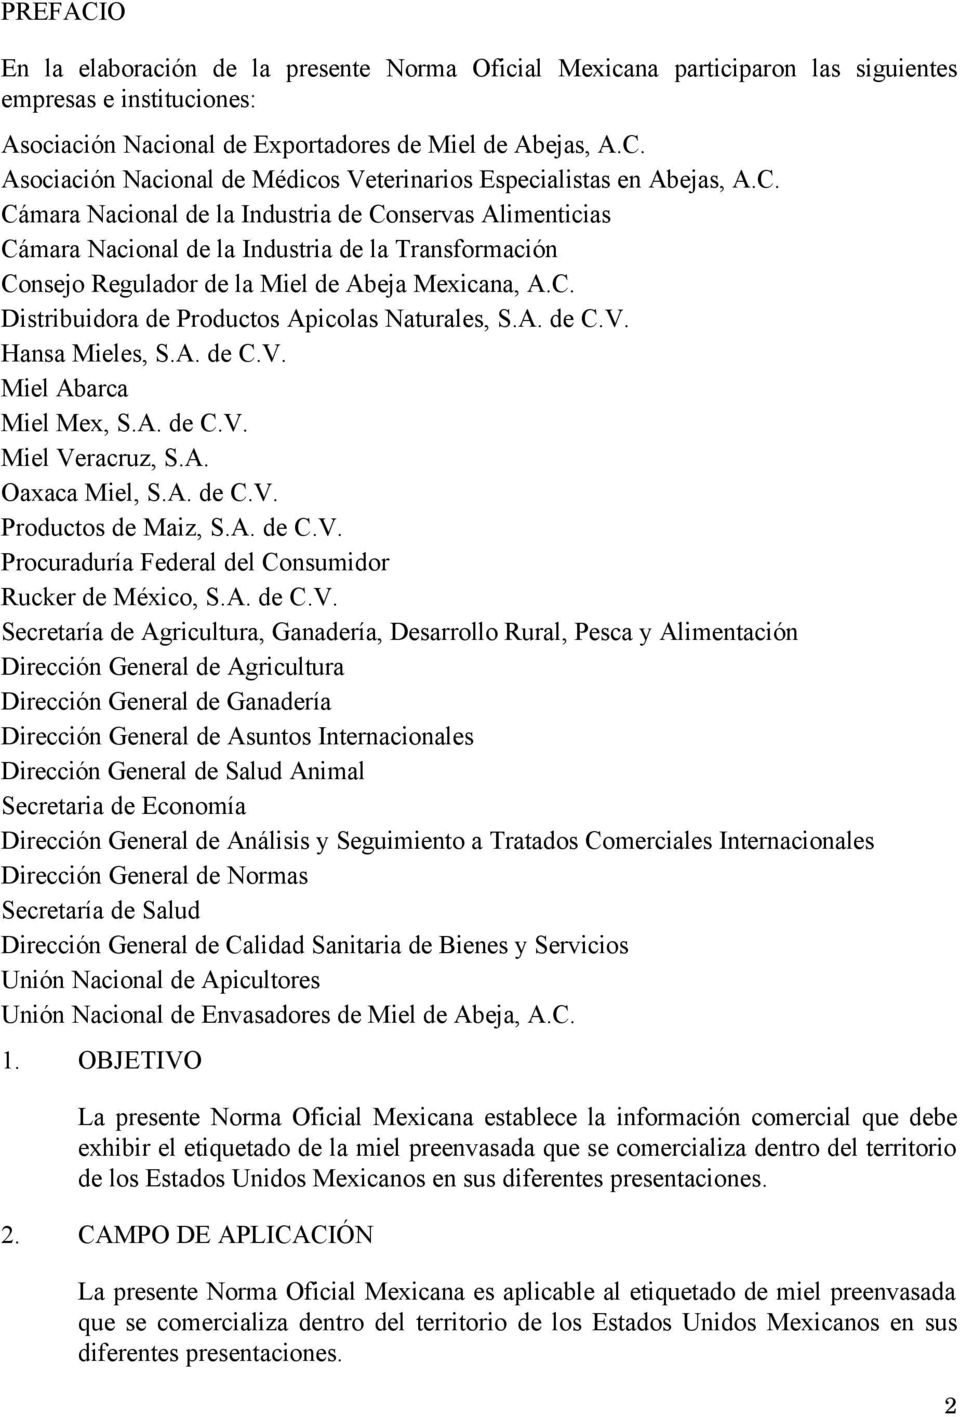 A. de C.V. Hansa Mieles, S.A. de C.V. Miel Abarca Miel Mex, S.A. de C.V. Miel Veracruz, S.A. Oaxaca Miel, S.A. de C.V. Productos de Maiz, S.A. de C.V. Procuraduría Federal del Consumidor Rucker de México, S.